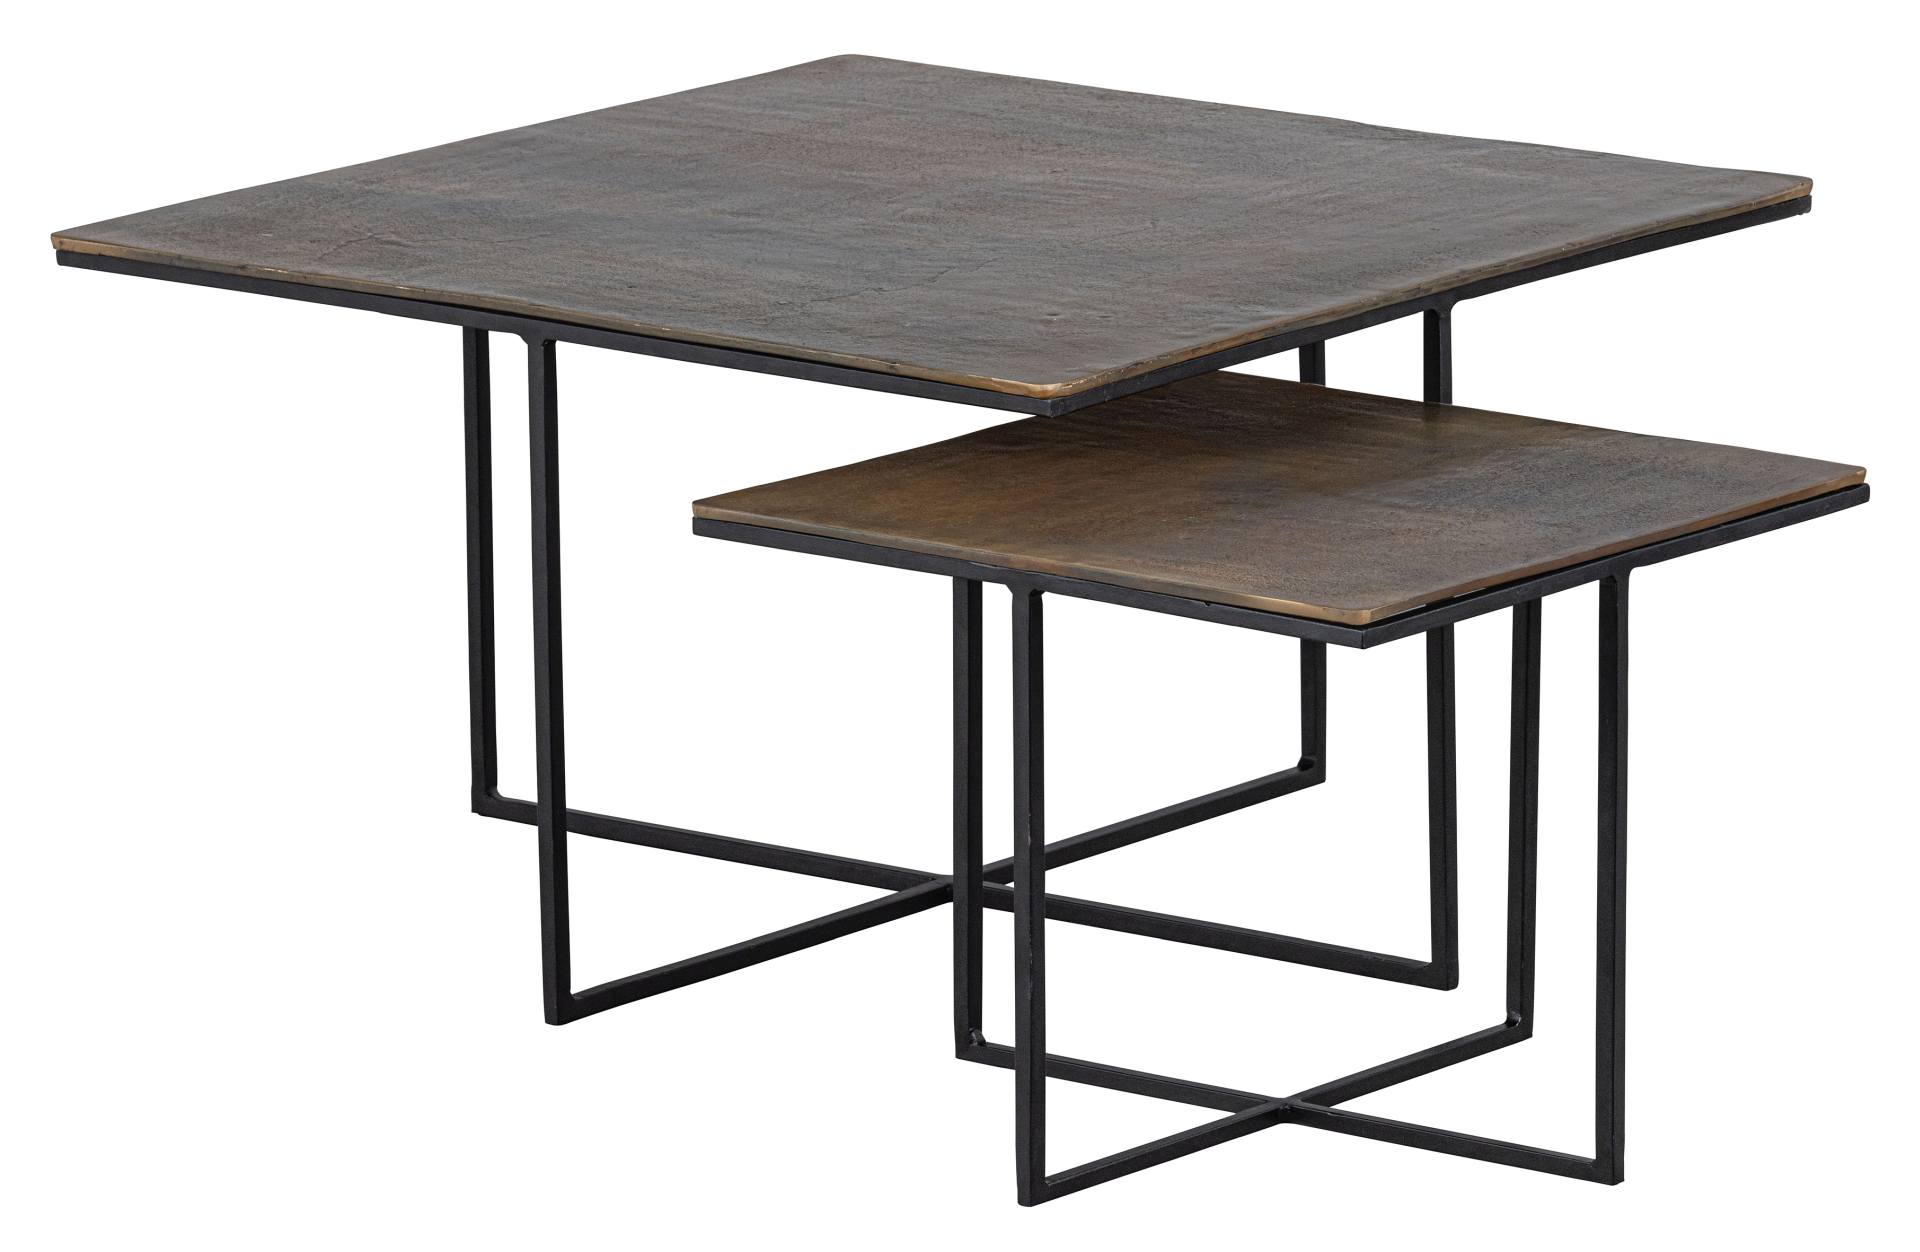 Das Beistelltisch 2er-Set Olan wurde aus Metall gefertigt. Es überzeugt mit seinem industriellem Design. Die Tischplatte besitzt ein Messing Farbton, das Gestell ist schwarz.